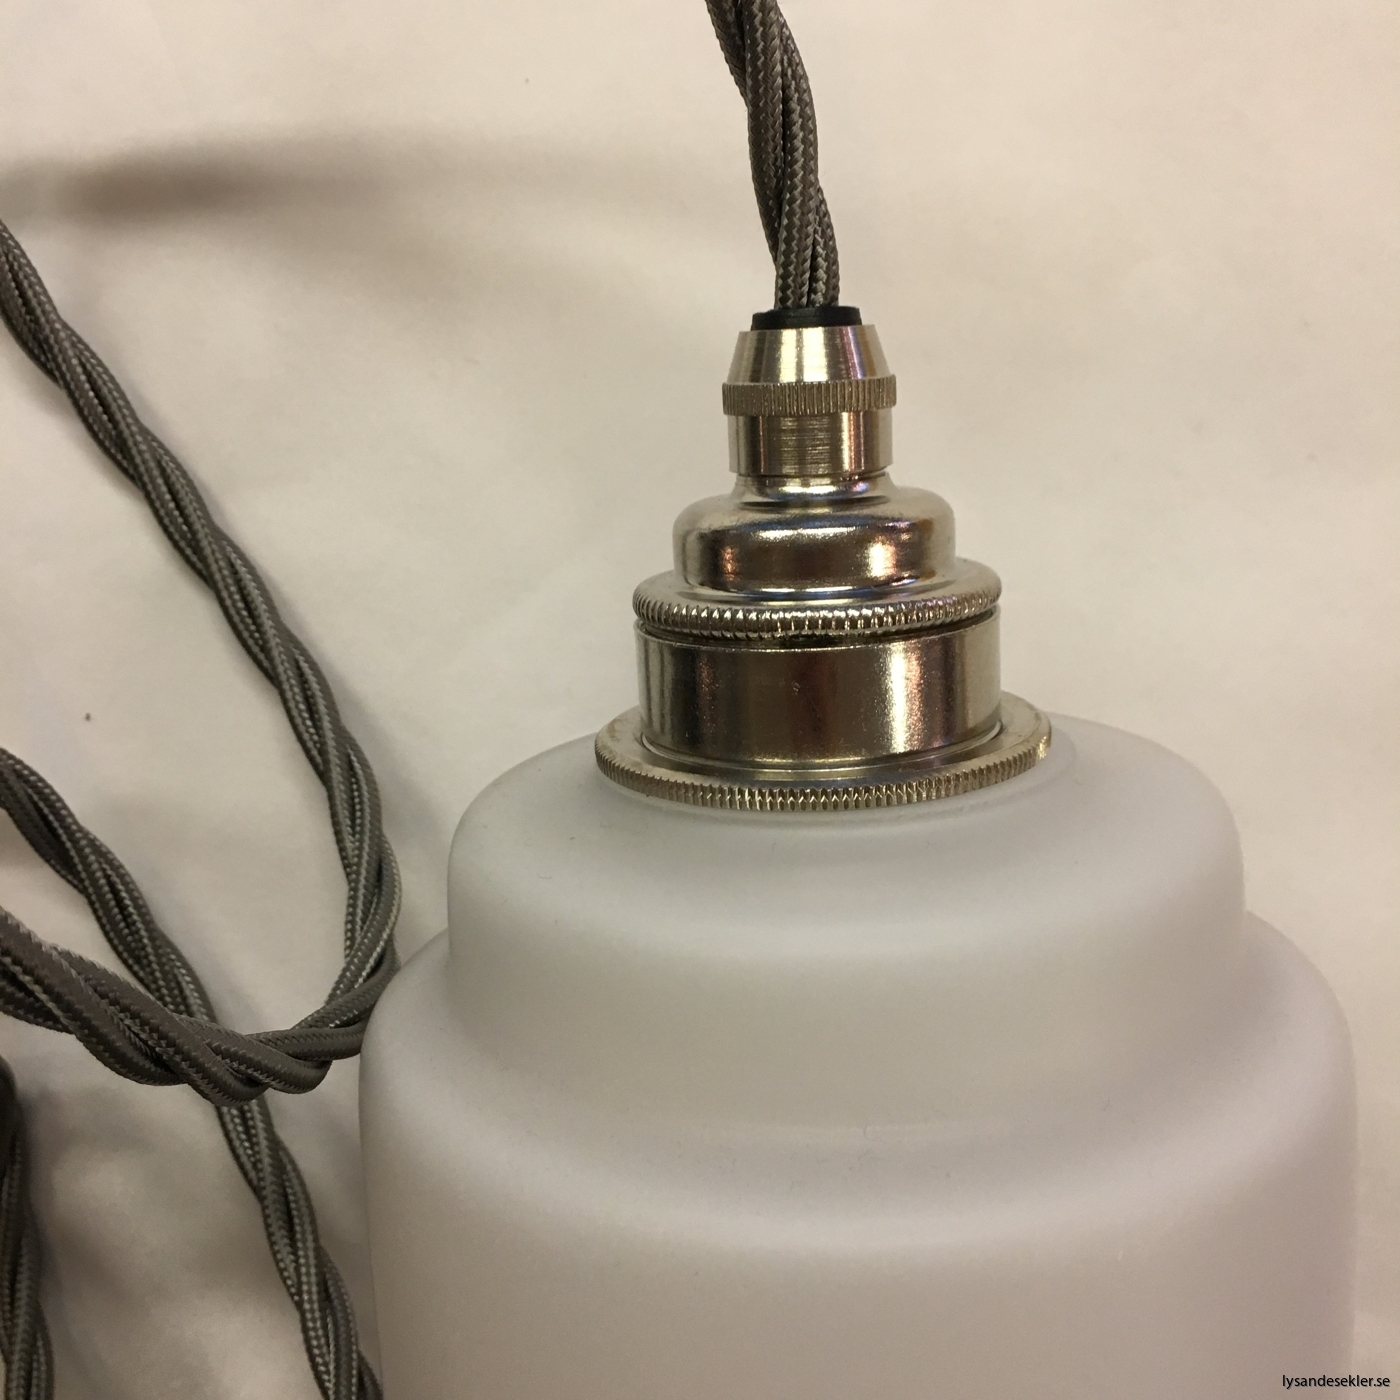 tygsladd textilssladd lampupphäng med 2 ringar utan skruvar för skärm eller glödlampa (24)